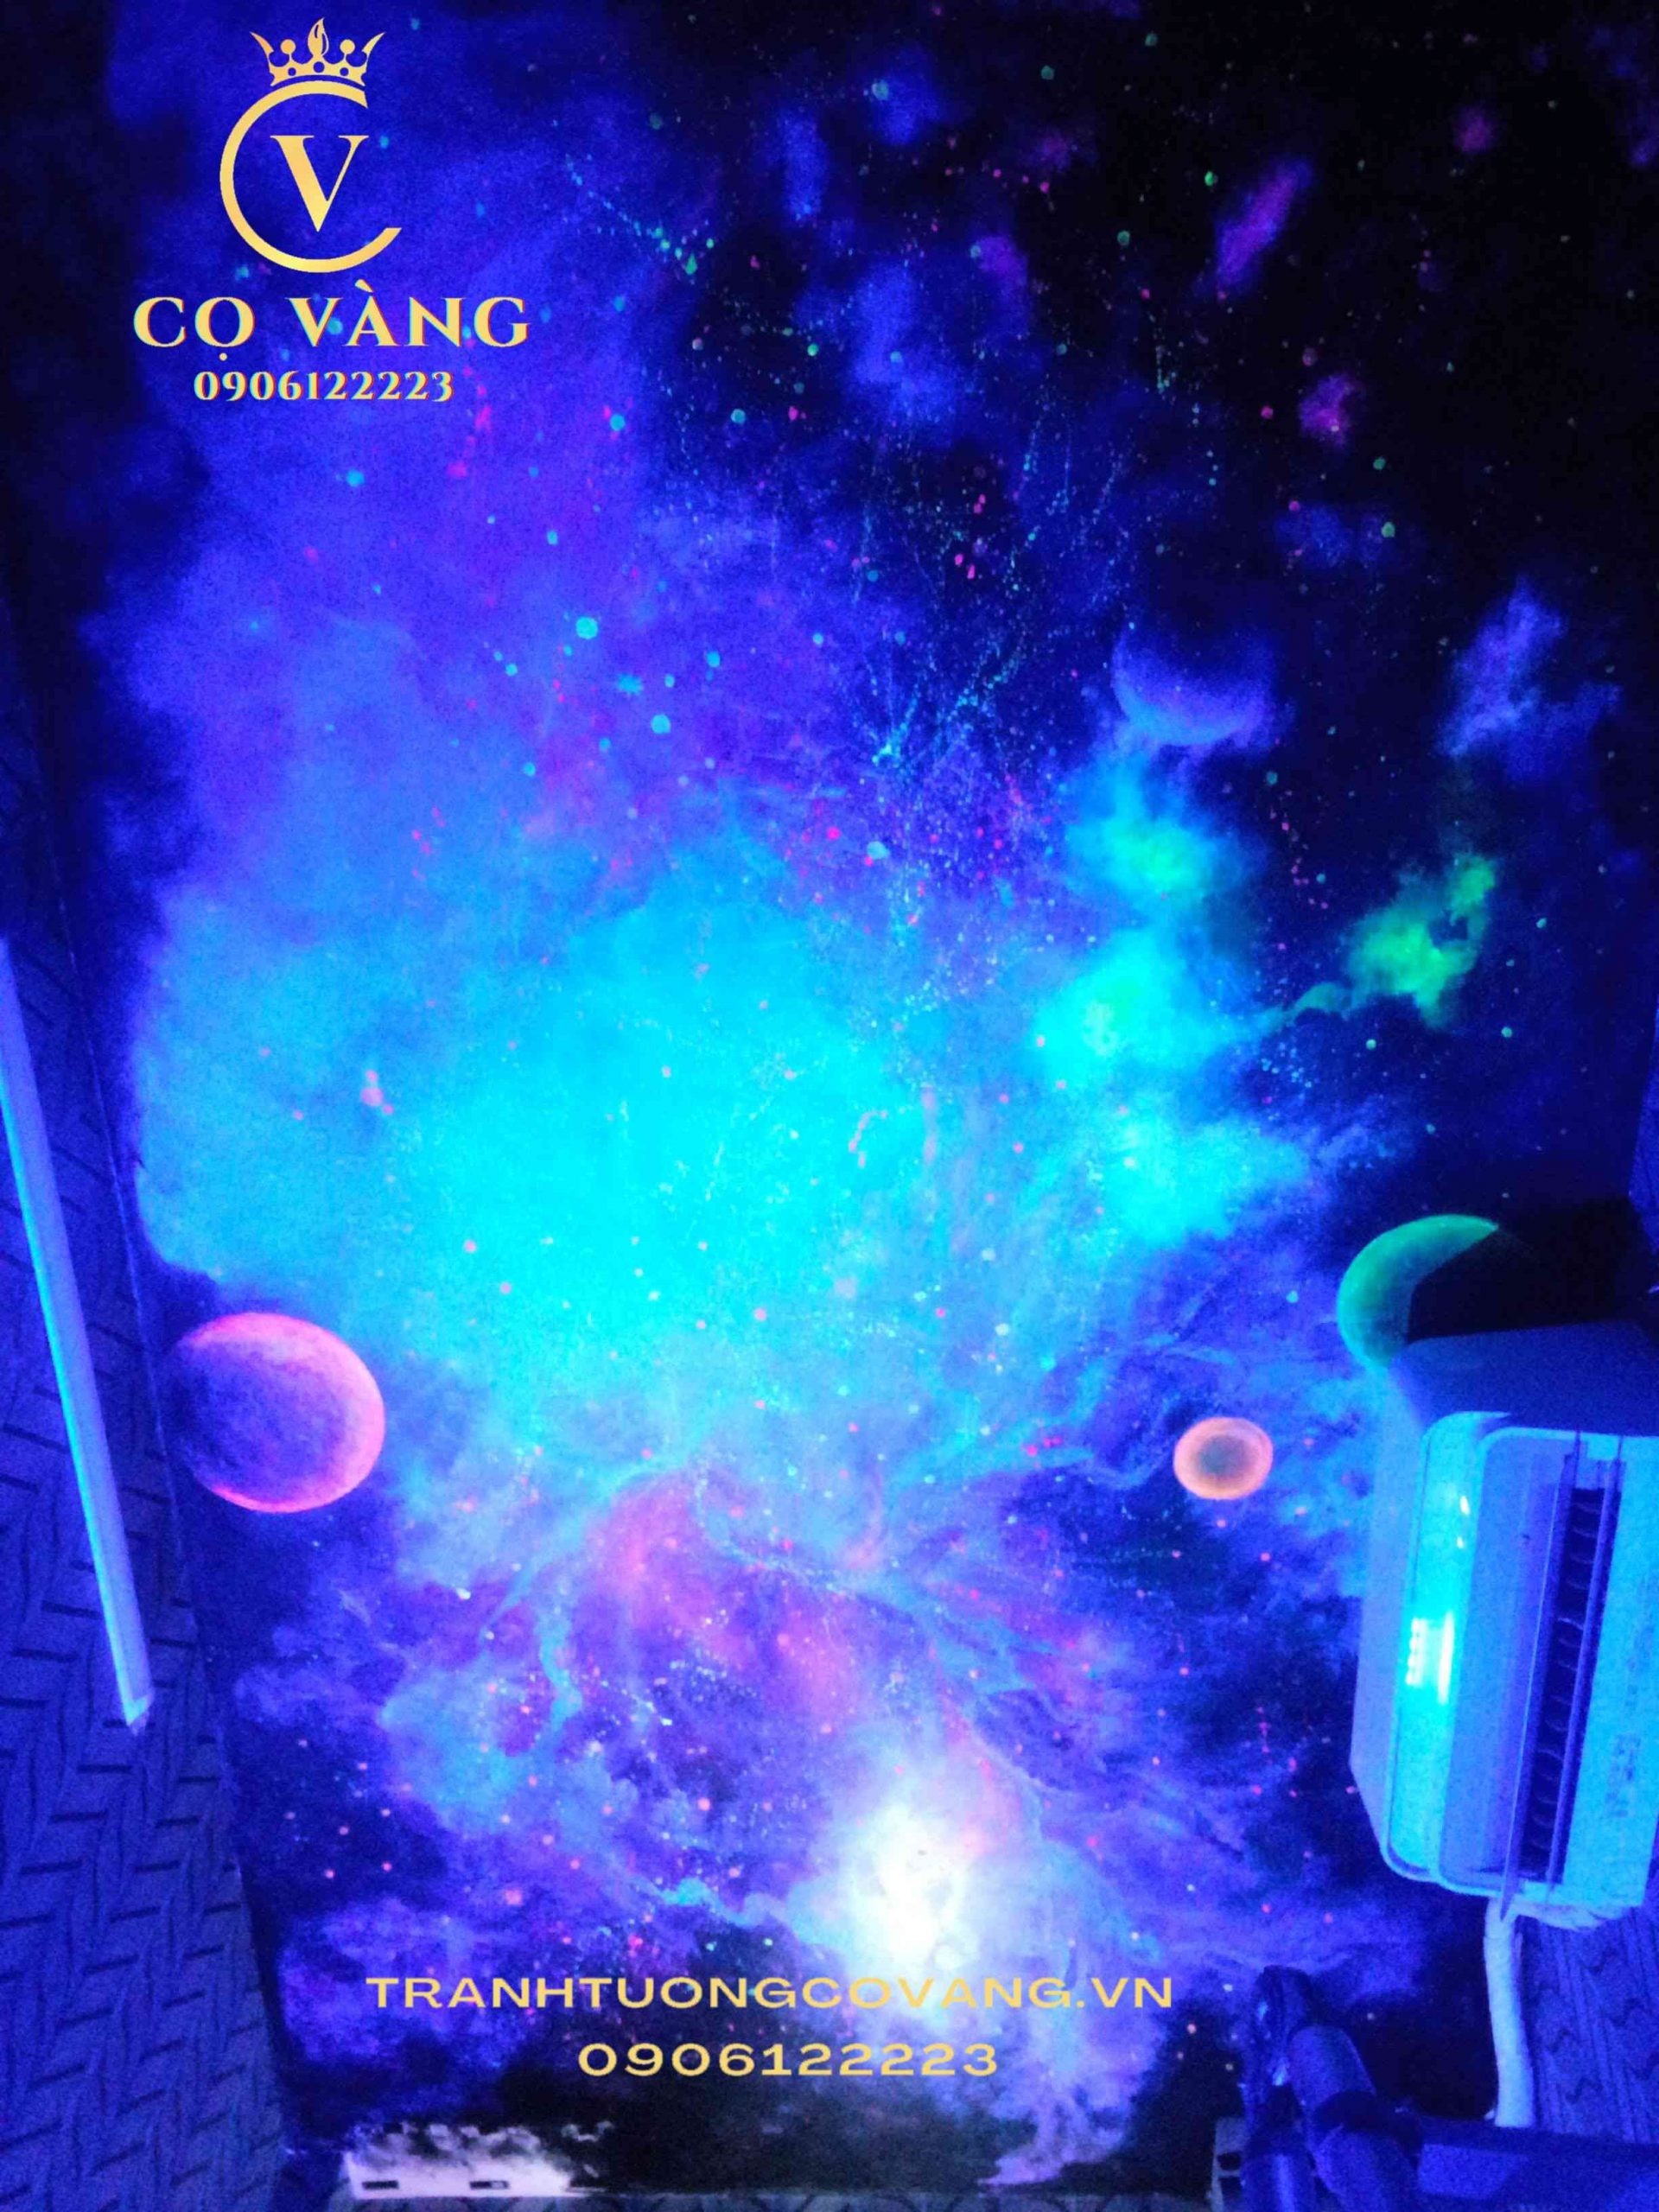 RGB  Galaxy  Tranh vẽ màu nước của Hoàng Vũ  19 tuổi wwwrgbvn RGB  design art thietke  Facebook